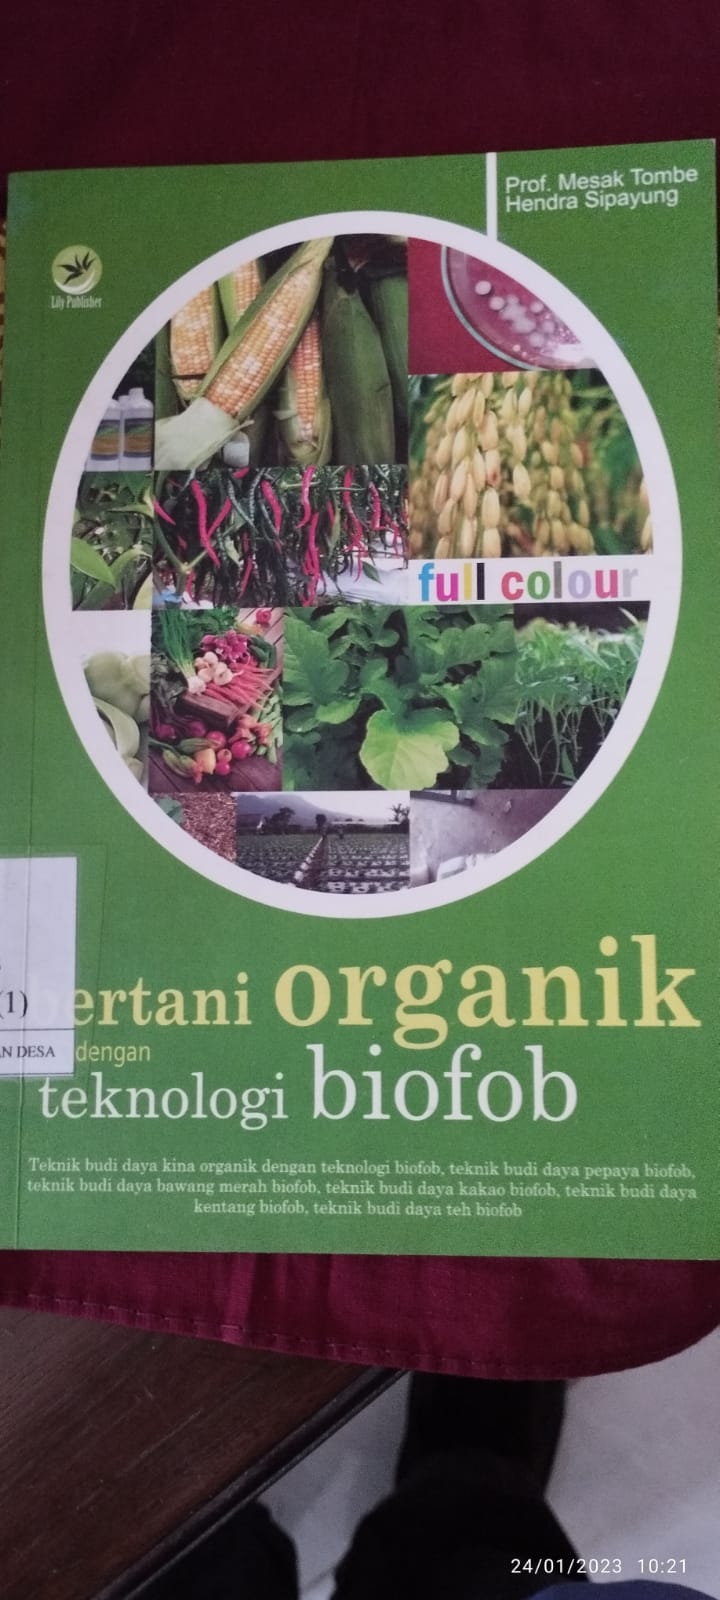 Bertani Organik dengan Teknologi Biofob